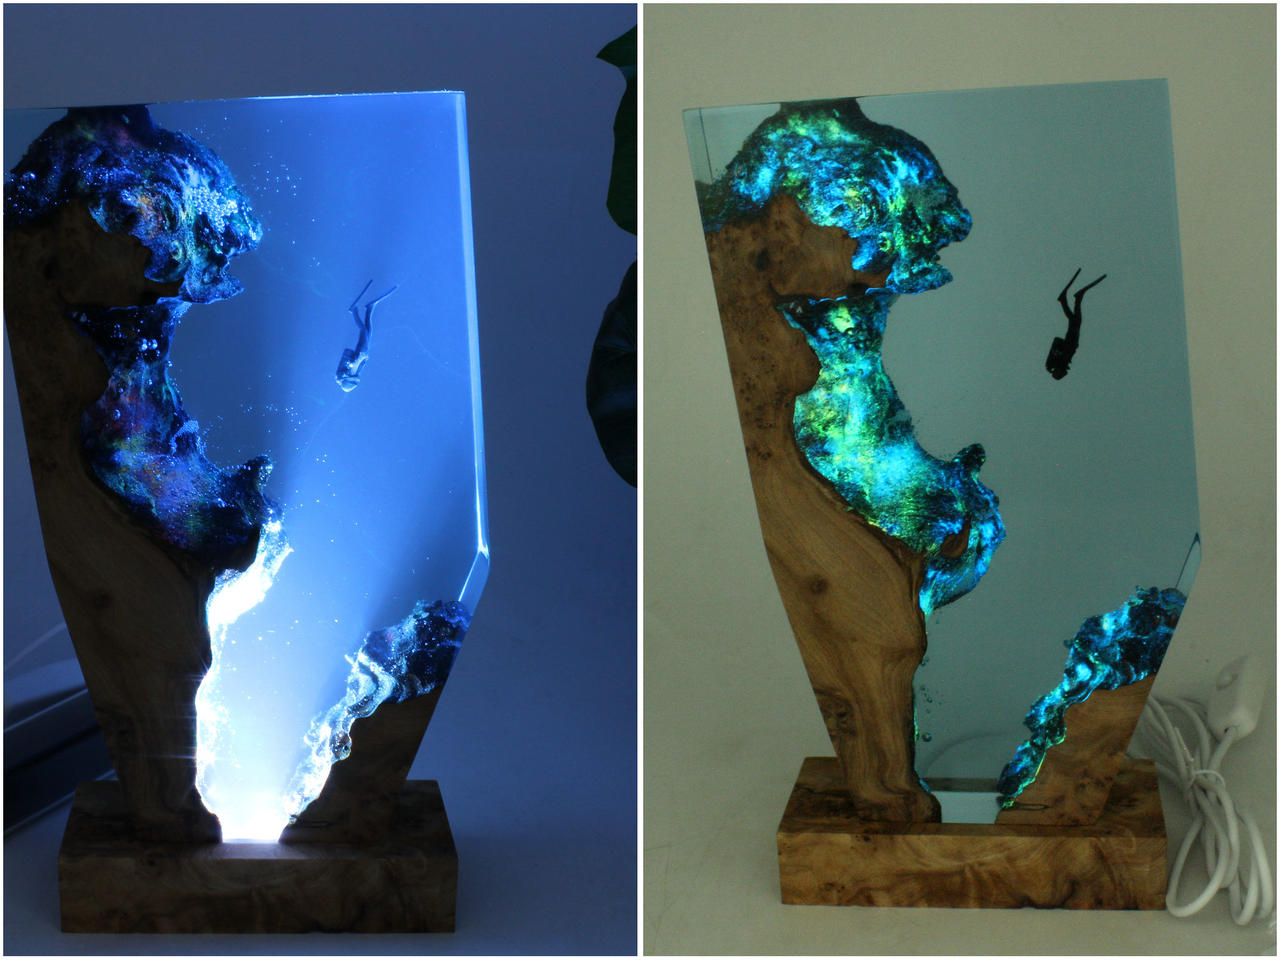 Shark Resin Night Light, Wood Resin Lamp Smartyleowl